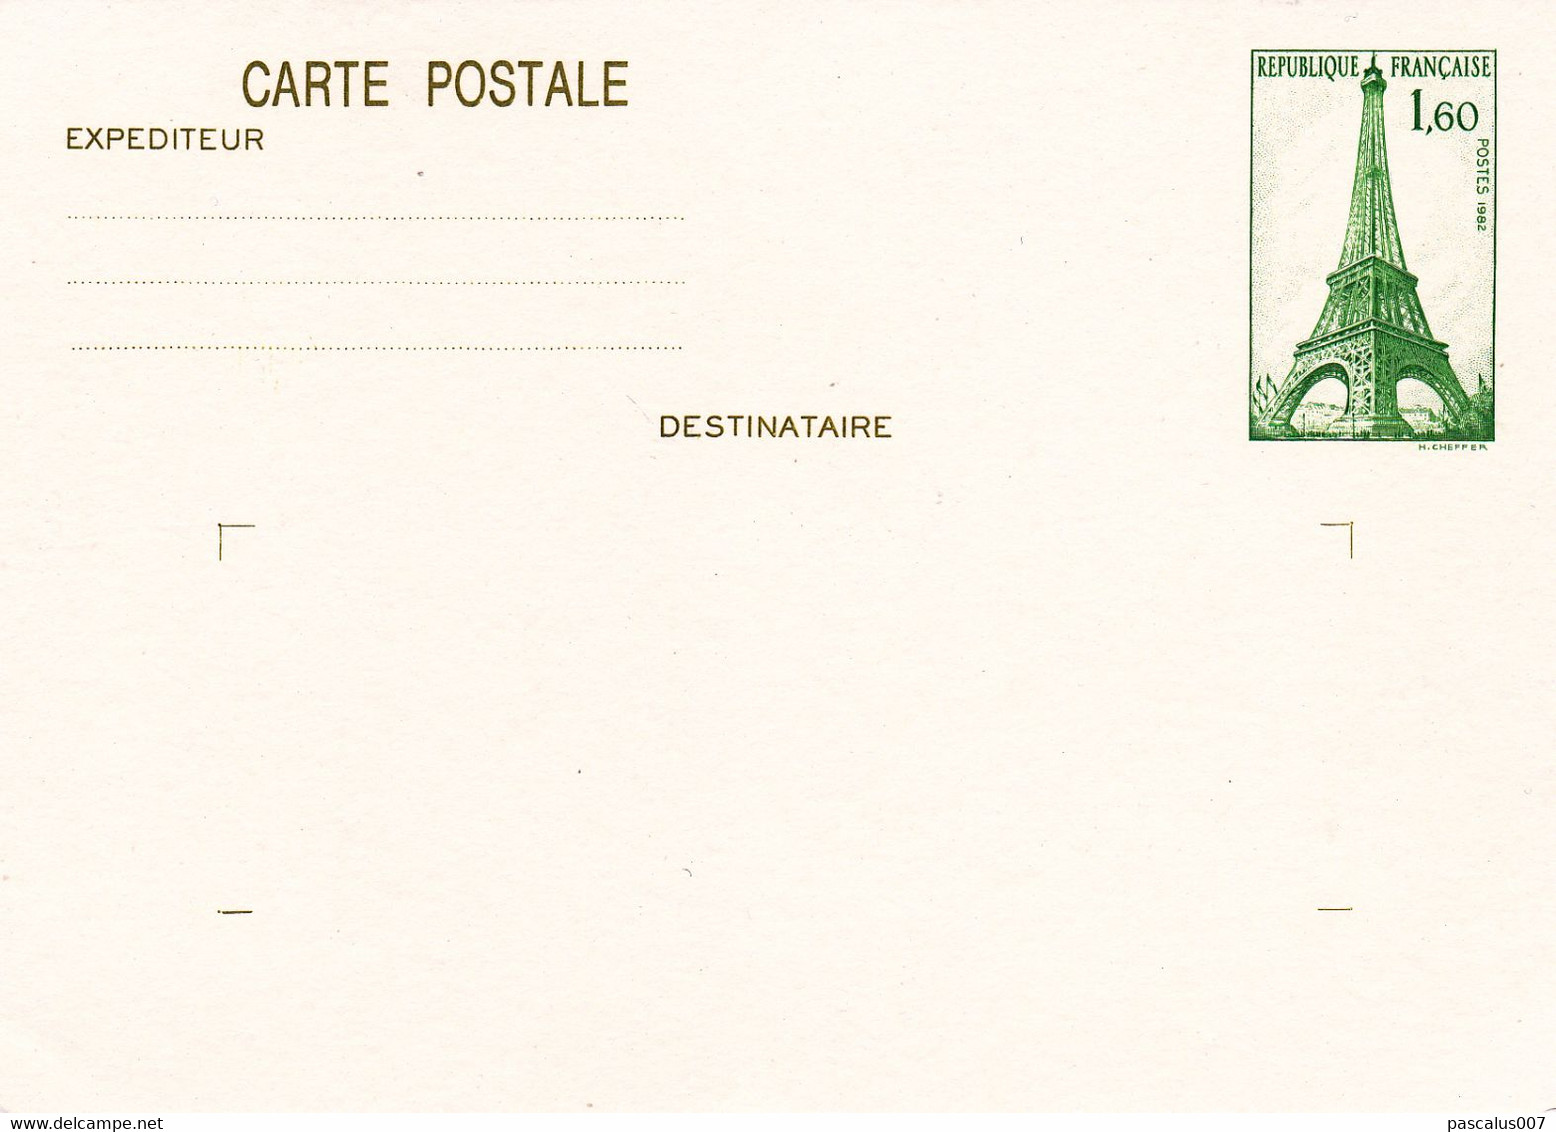 B01-373 3 Cartes Postales Entiers Postaux France 1982 Belgica Tour Eiffel - Konvolute: Ganzsachen & PAP